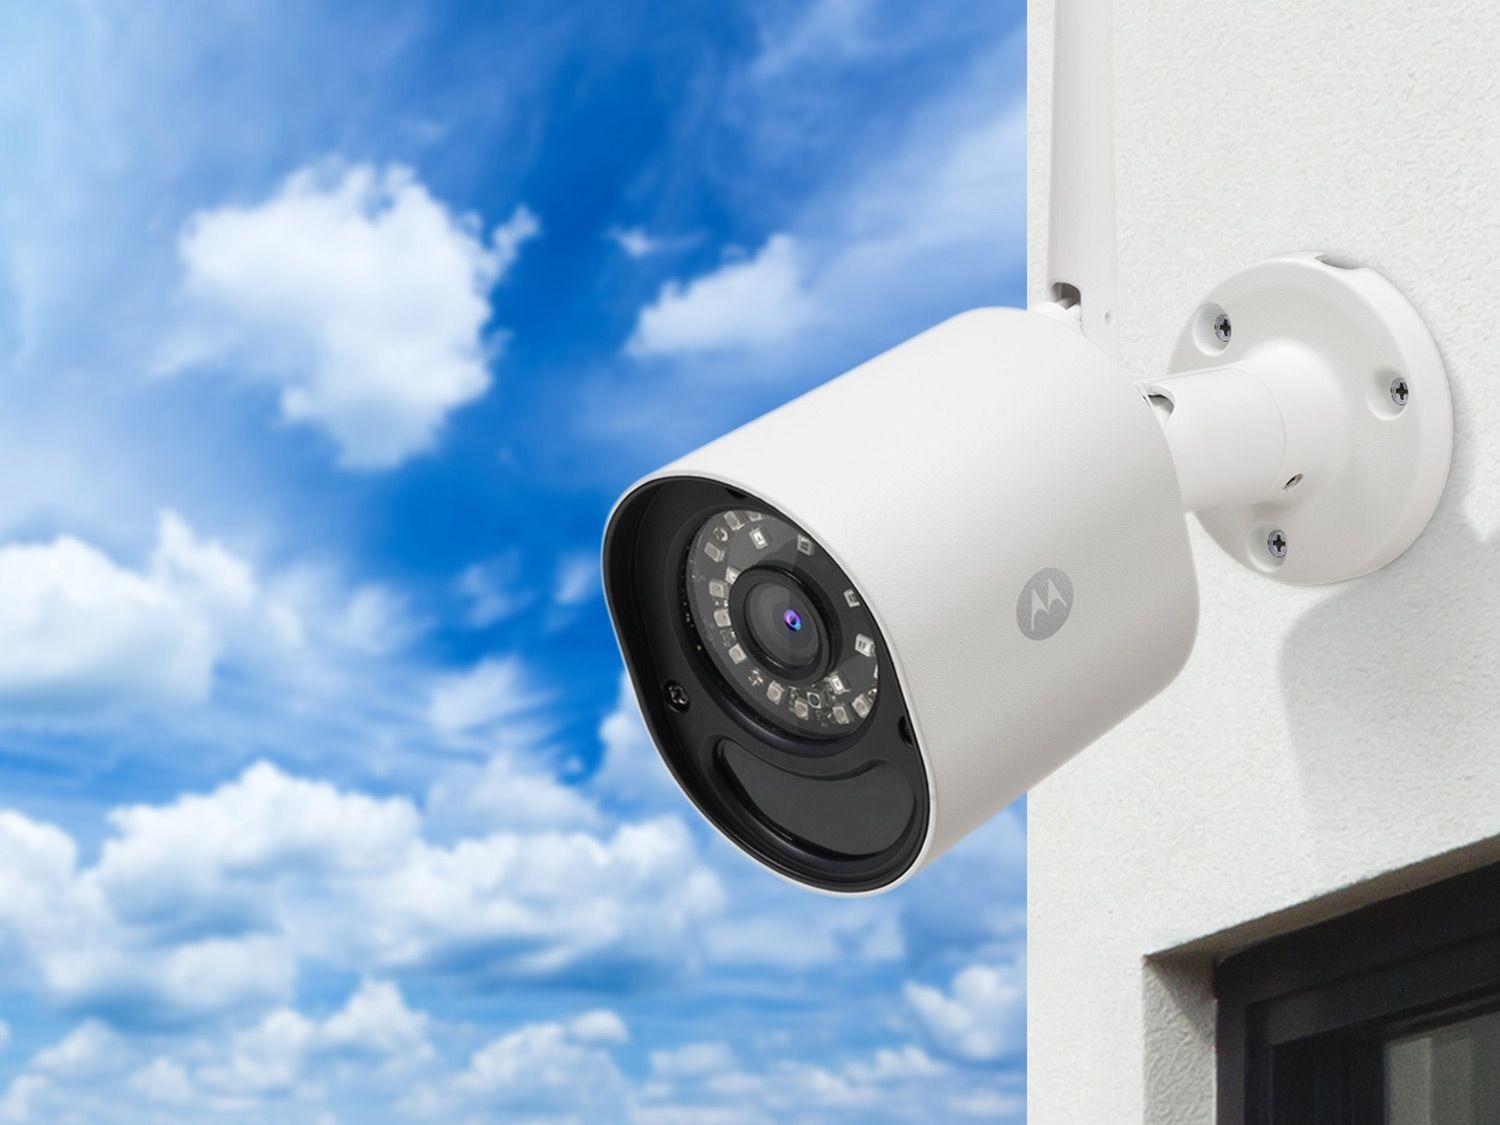 Verplicht Graag gedaan Geef energie Focus 72 HD Outdoor bewakingscamera kopen? | LIDL